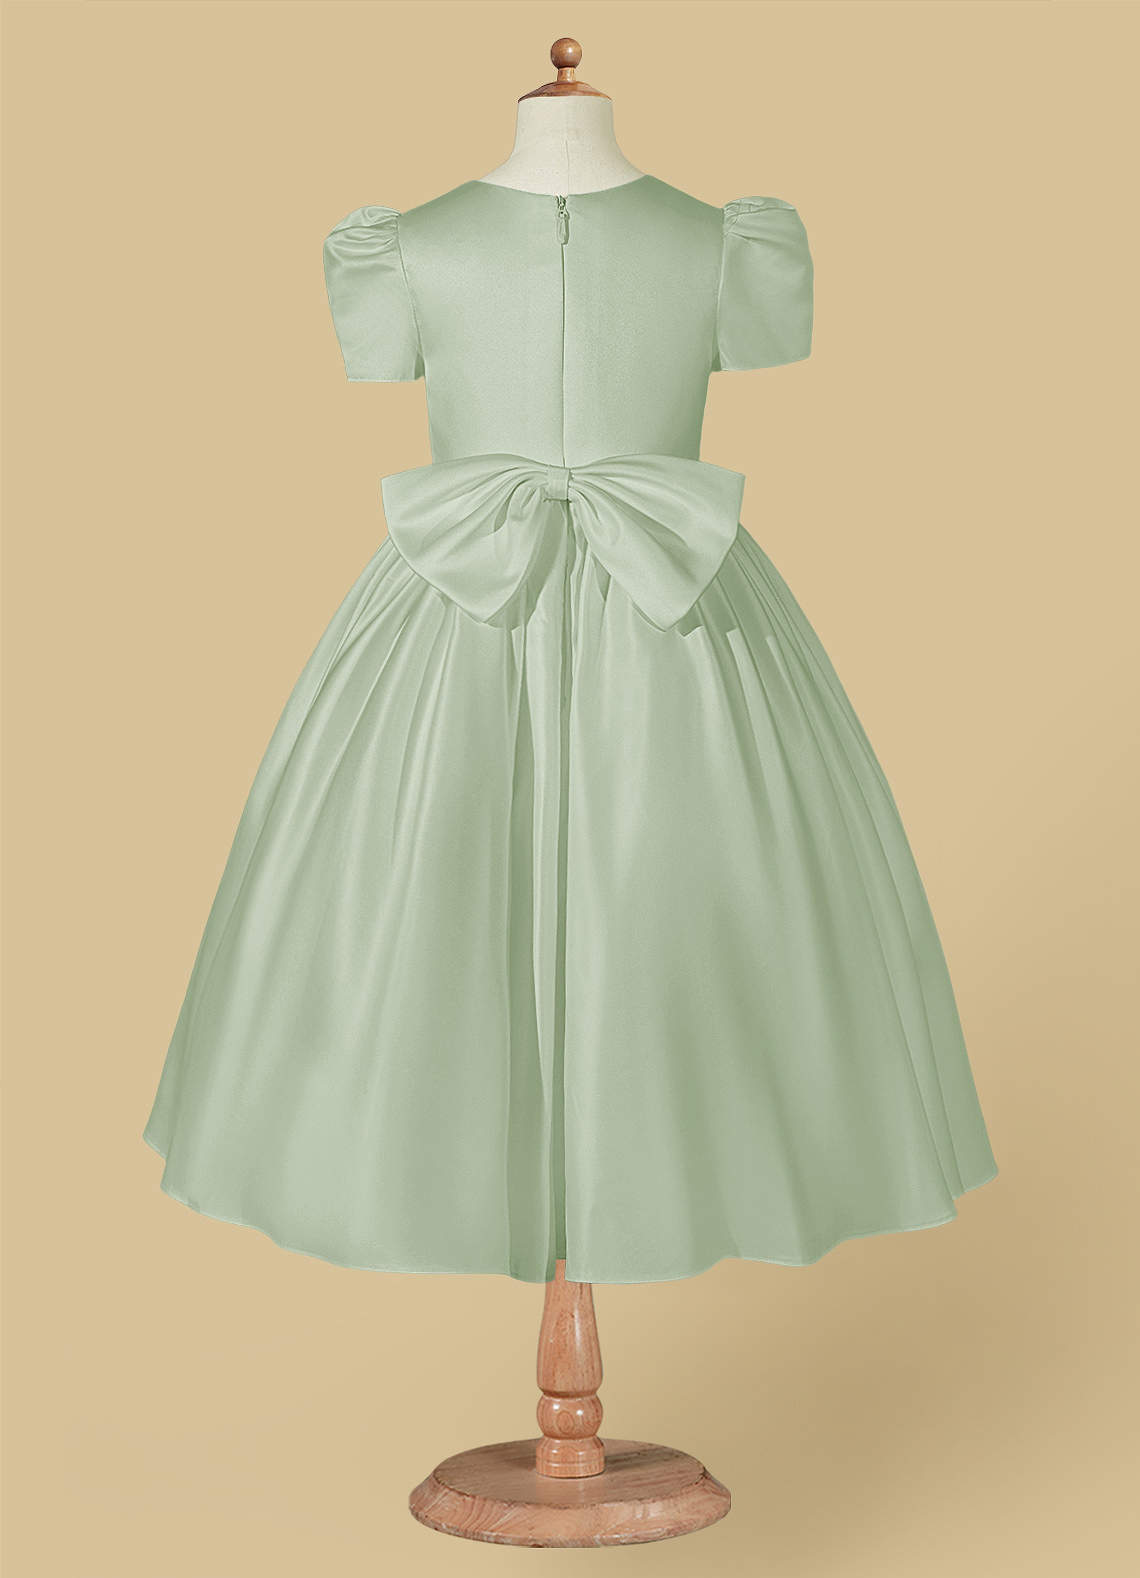 Azazie Anirra Flower Girl Dresses Ball-Gown Pleated Matte Satin Tea-Length Dress image1